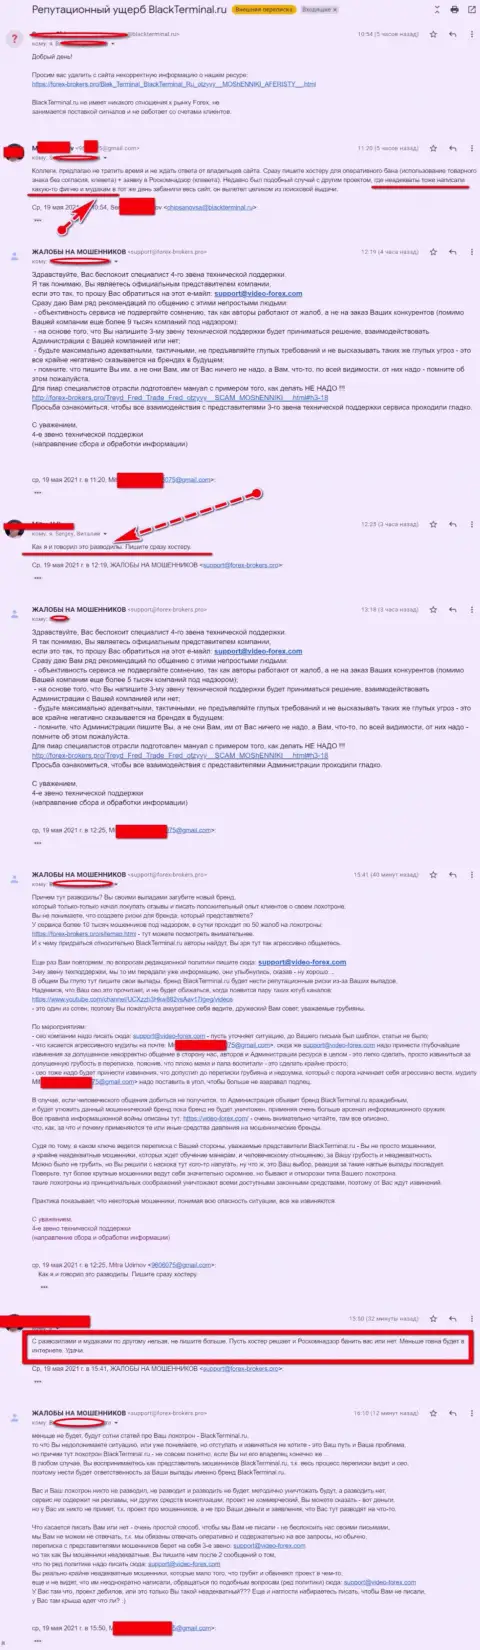 Онлайн переписка администрации ресурса, с отзывами о BlackTerminal, с некими представителями указанного противозаконно действующего сервиса